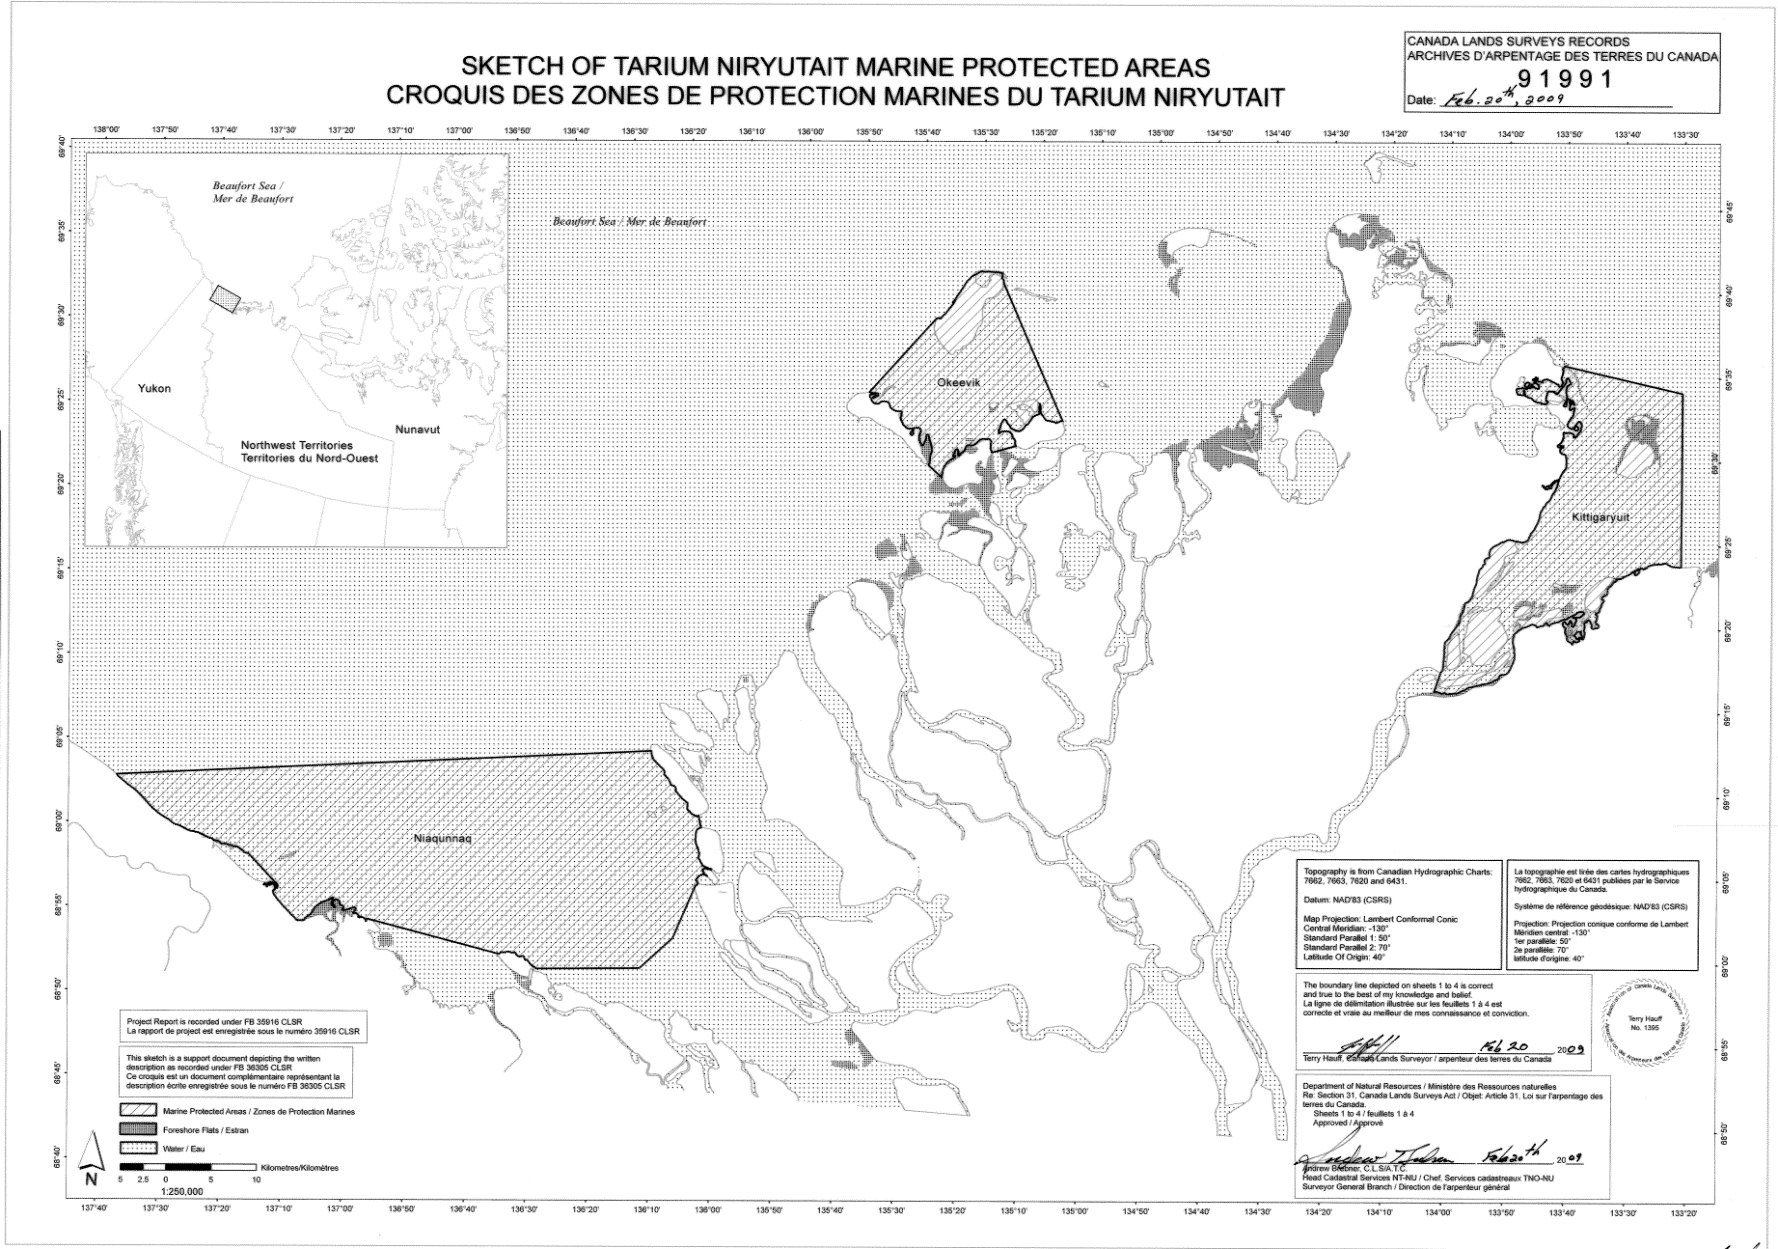 Carte des zones marines protégées de Tarium Niryutait. Les zones marines protégées sont représentées par des cercles gris clair et des lignes diagonales.